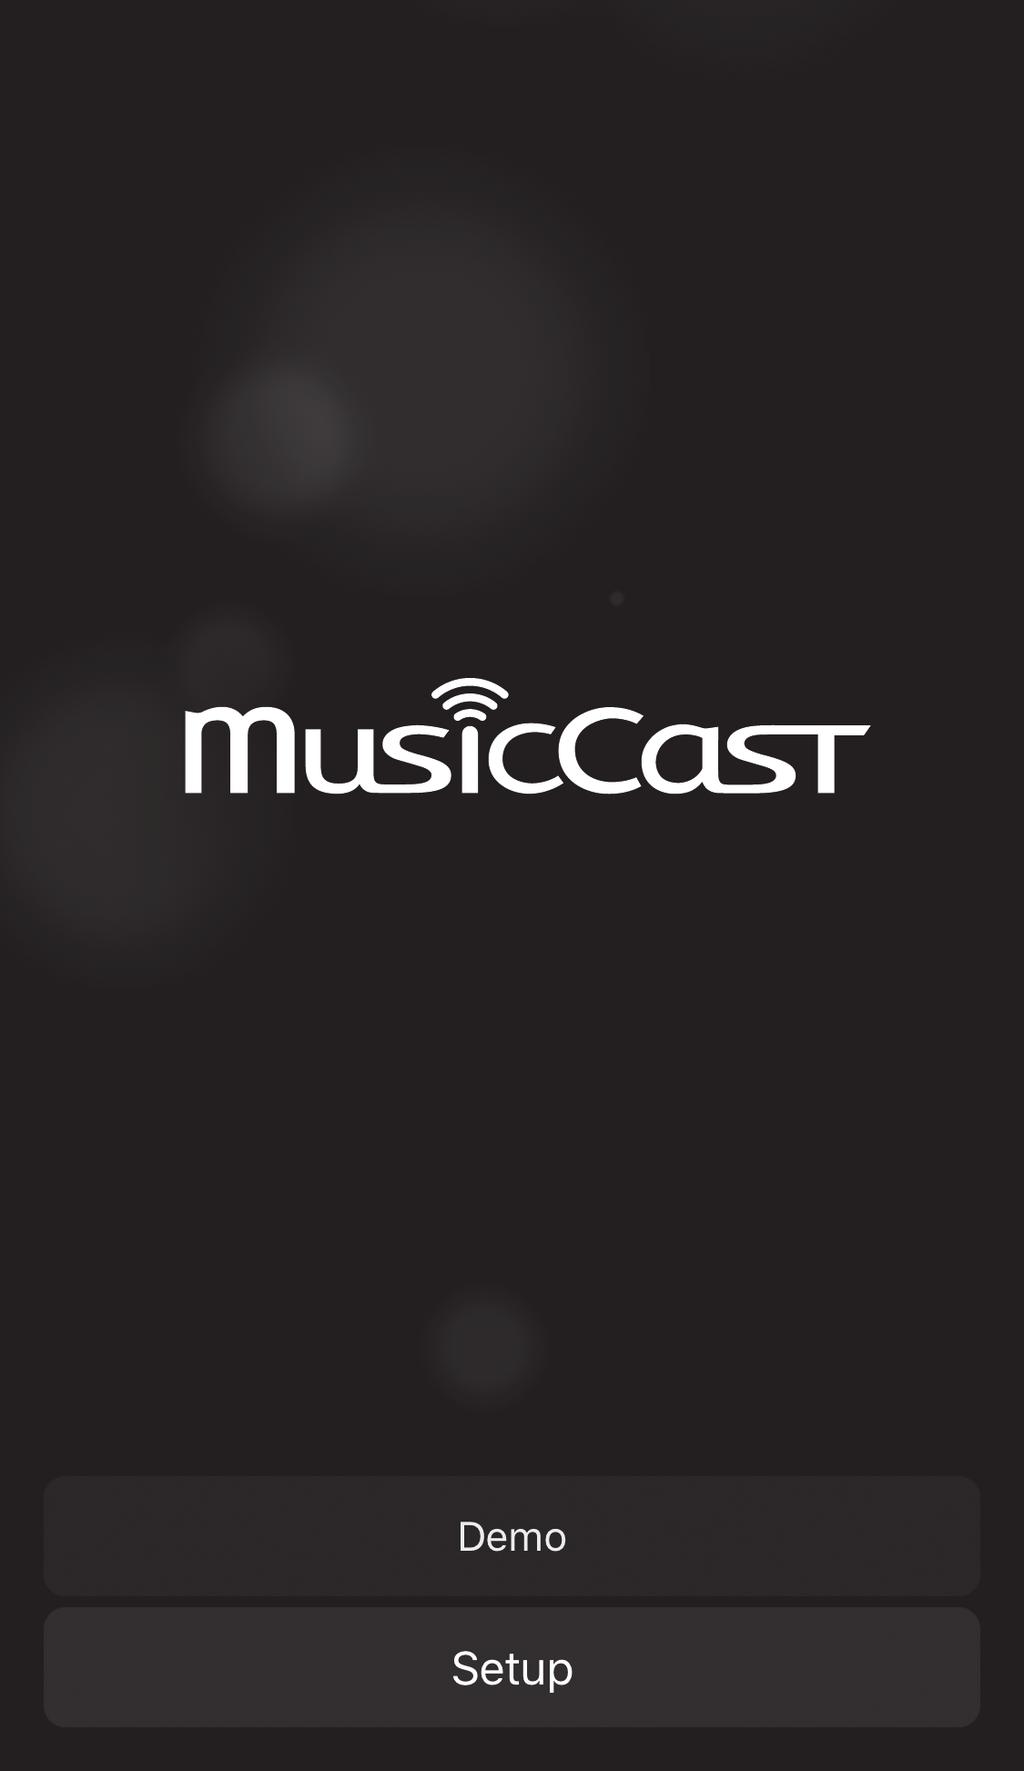 Anslutning med MusicCast CONTROLLERappen (registrerar enheten som en MusicCast-aktiverad apparat) Installera MusicCast CONTROLLER-appen på din mobila enhet för att ansluta enheten till ett nätverk